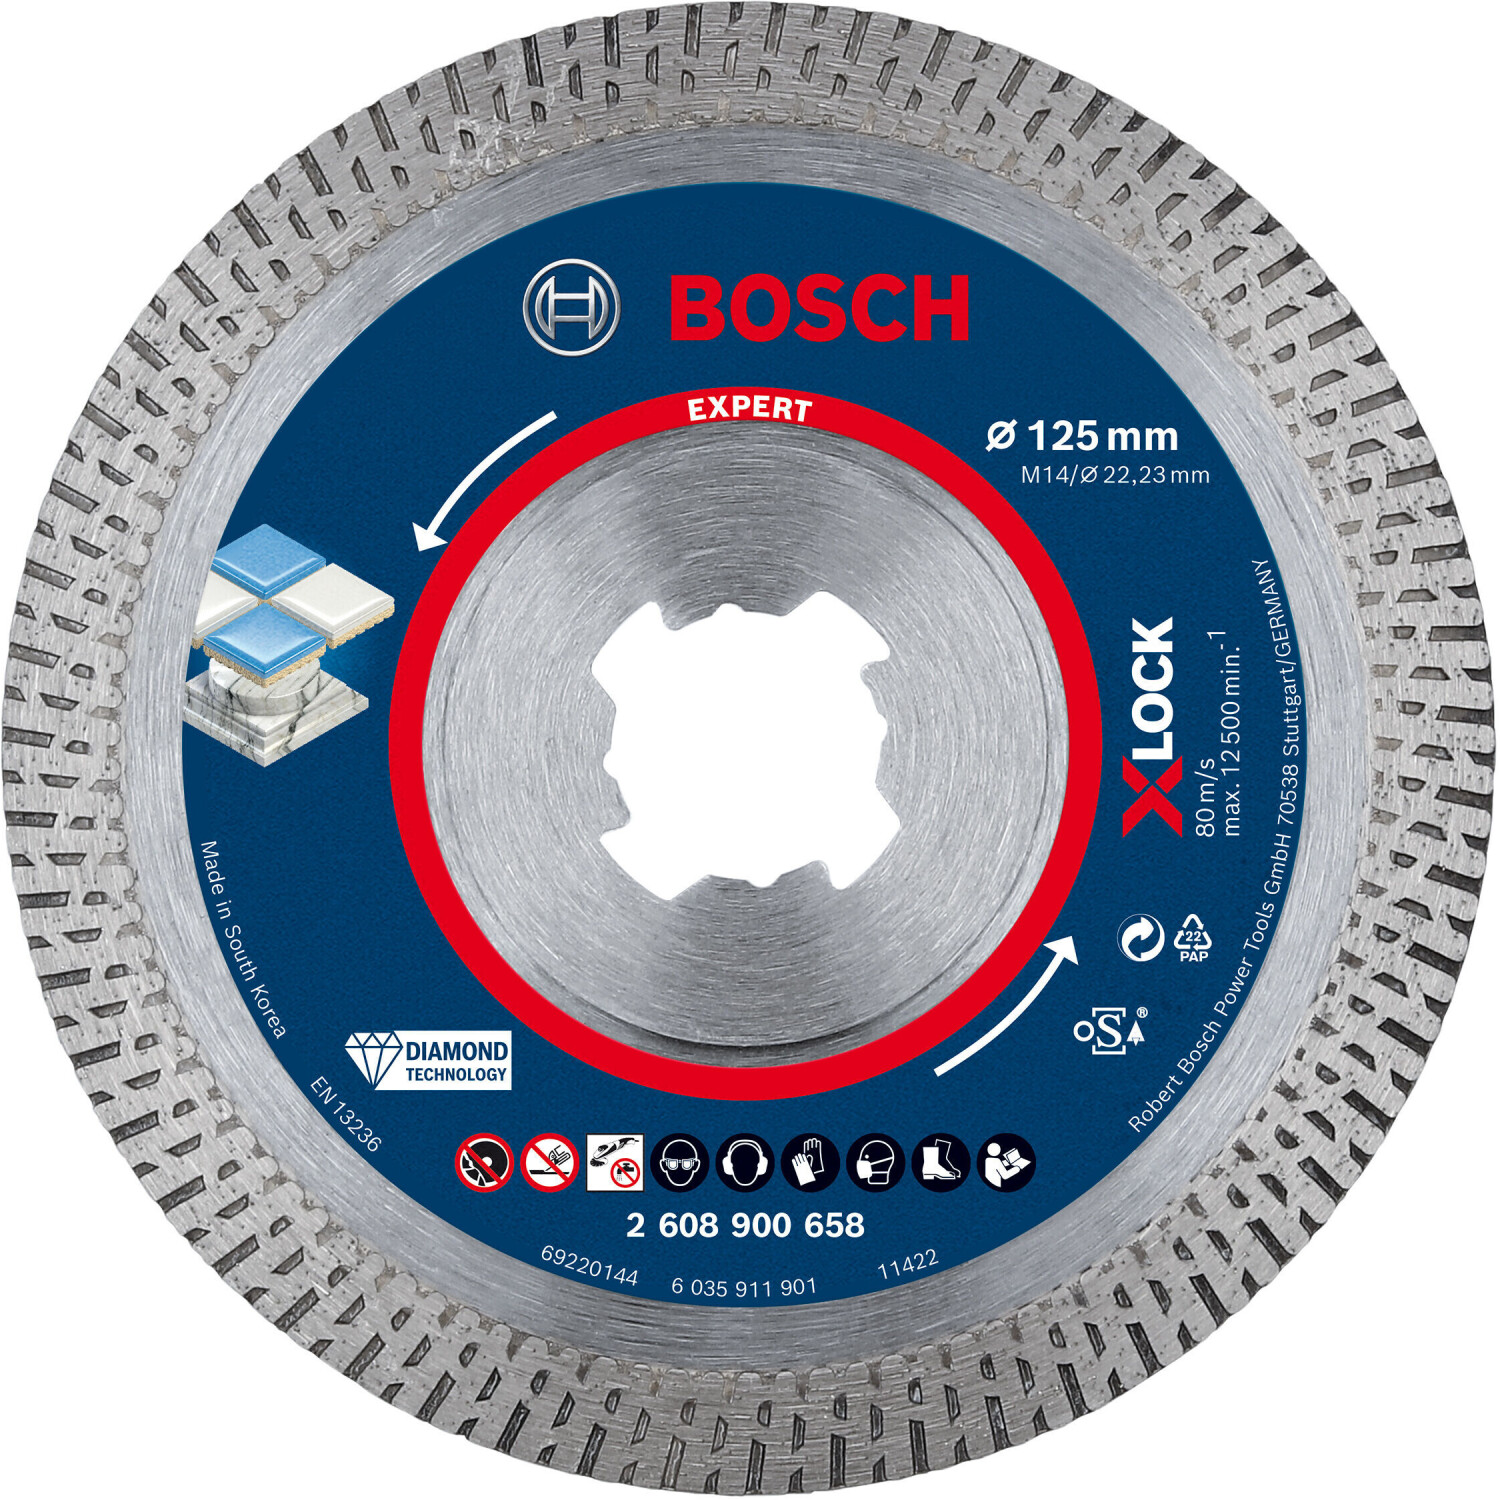 Bosch Accessories HardCeramic x 22,23 | € mm (2608900658) X-LOCK ab Preisvergleich Expert 125 bei 1,4 24,95 x